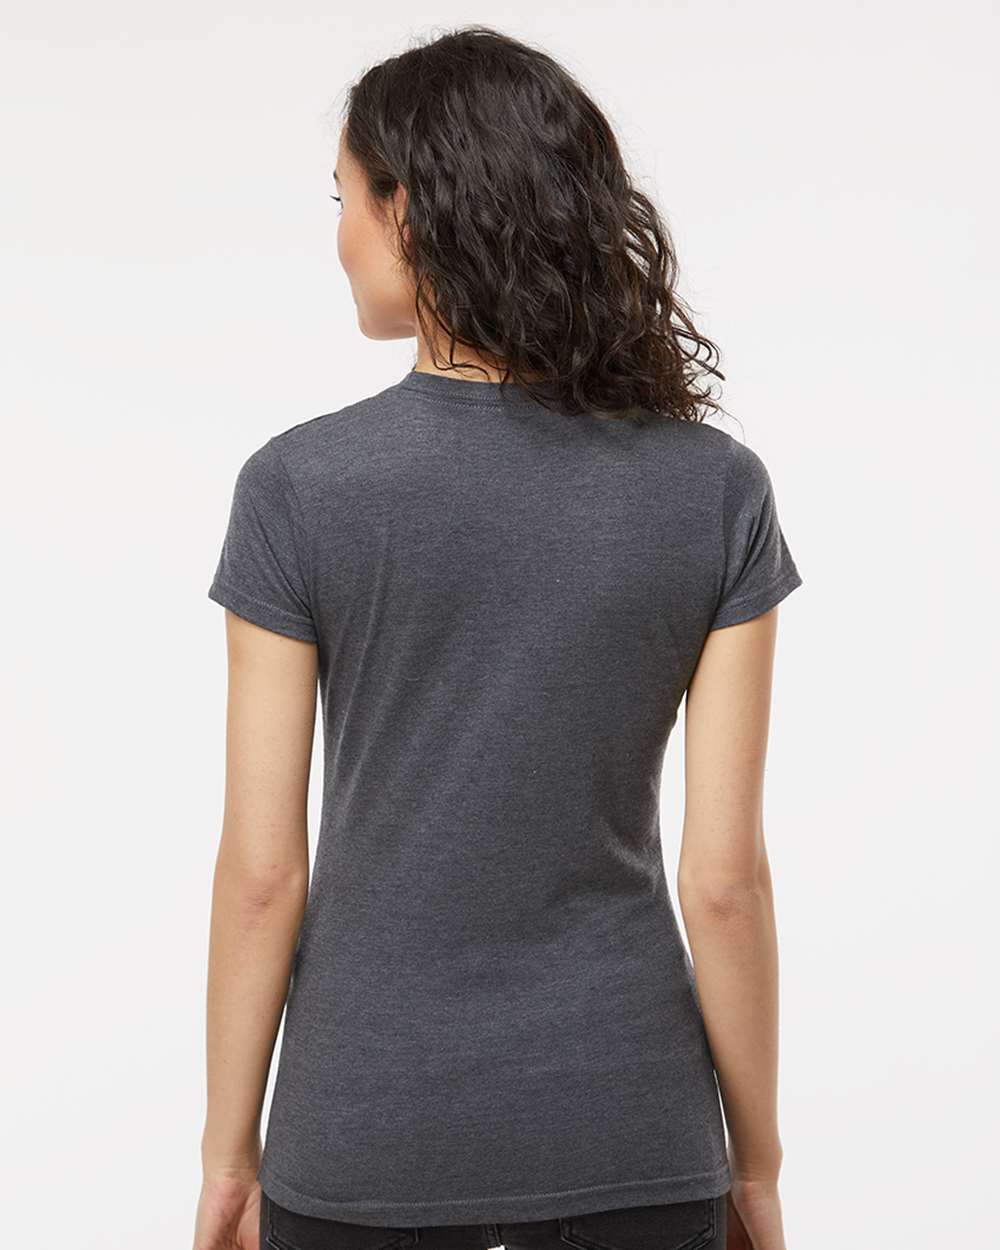 M&O Women's Fine Jersey T-Shirt 4513